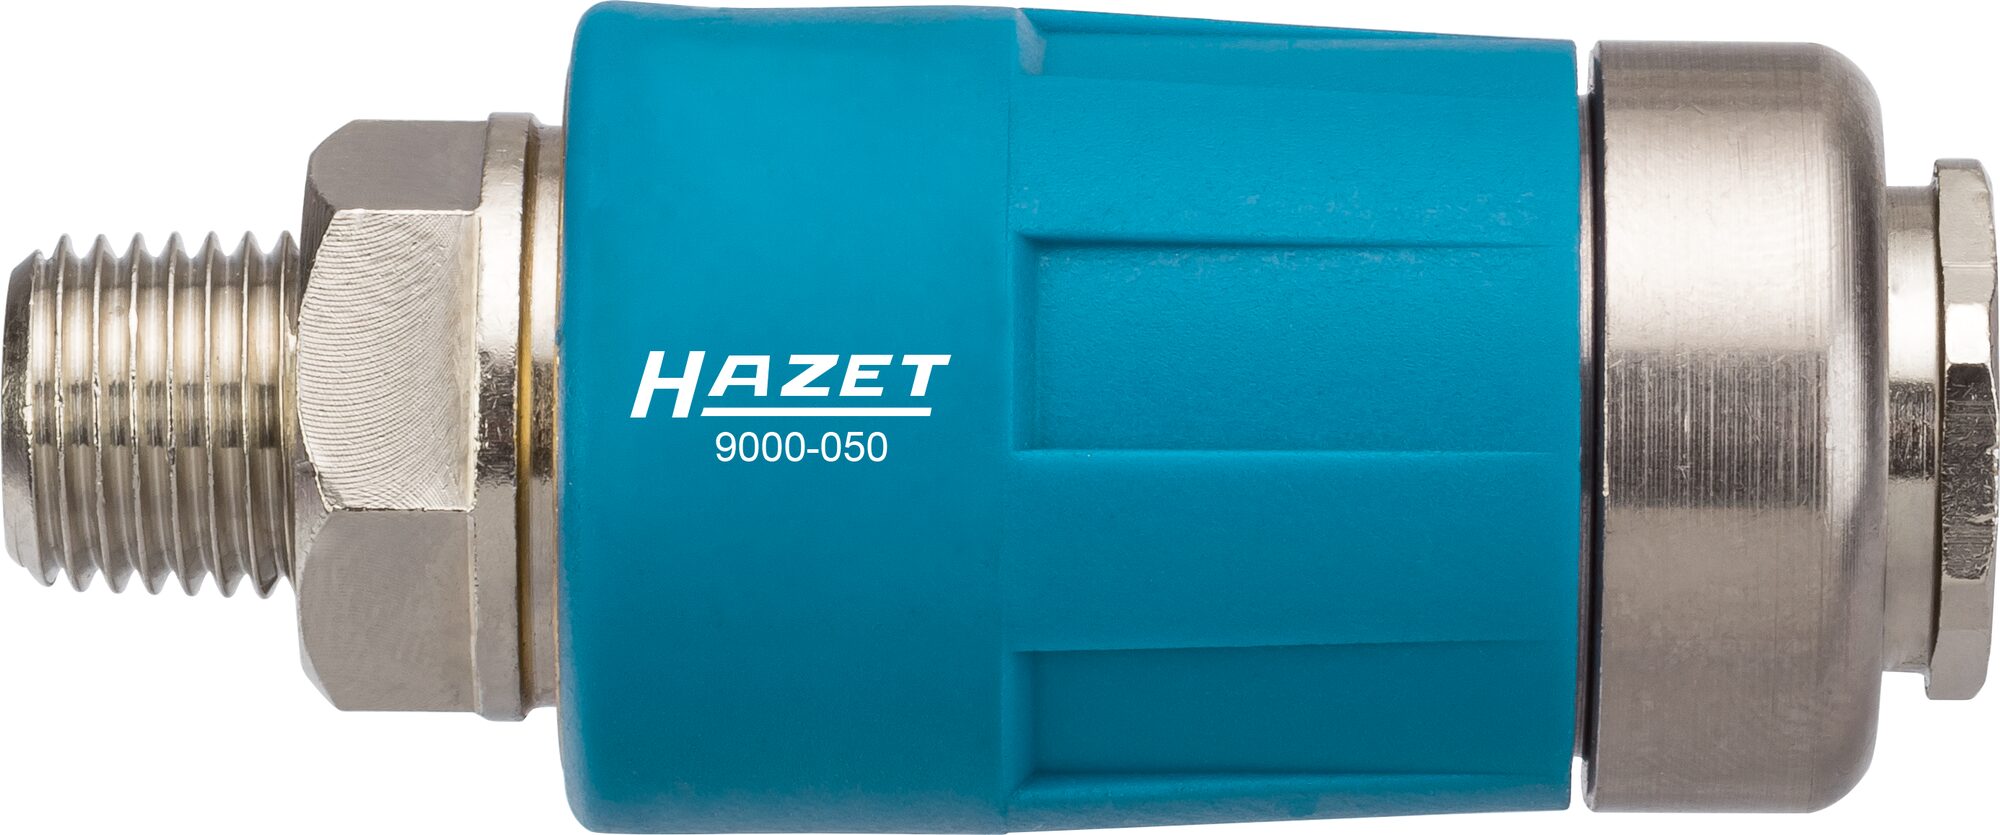 HAZET Sicherheits Kupplung 9000-050